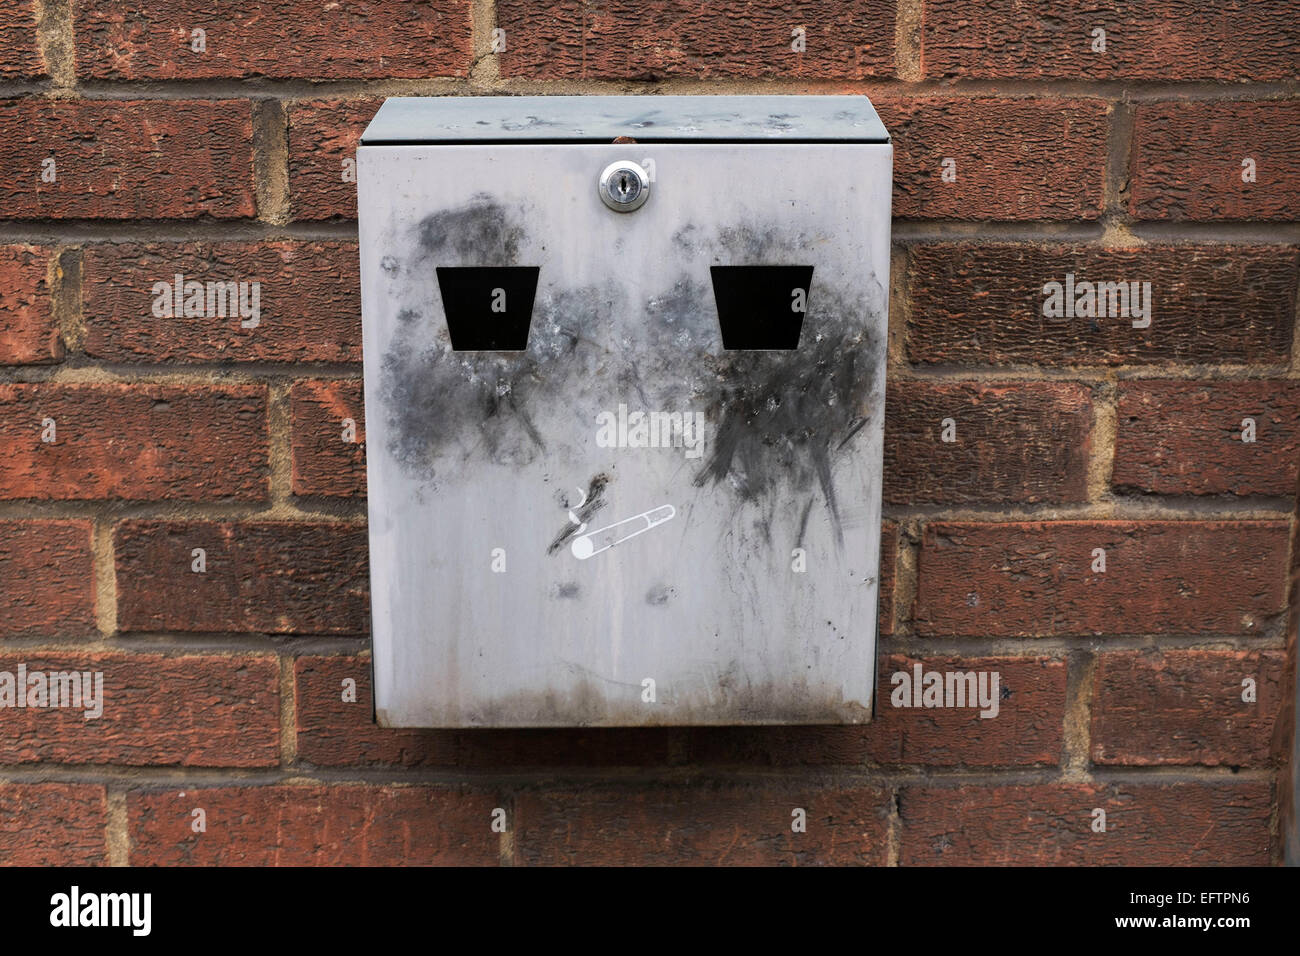 Cendrier qui ressemble à un visage sur un mur extérieur. Londres, Royaume-Uni. Depuis l'interdiction de fumer dans les lieux publics, ces cendriers sont devenus un spectacle familier comme fumeurs sortir pour fumer. Banque D'Images